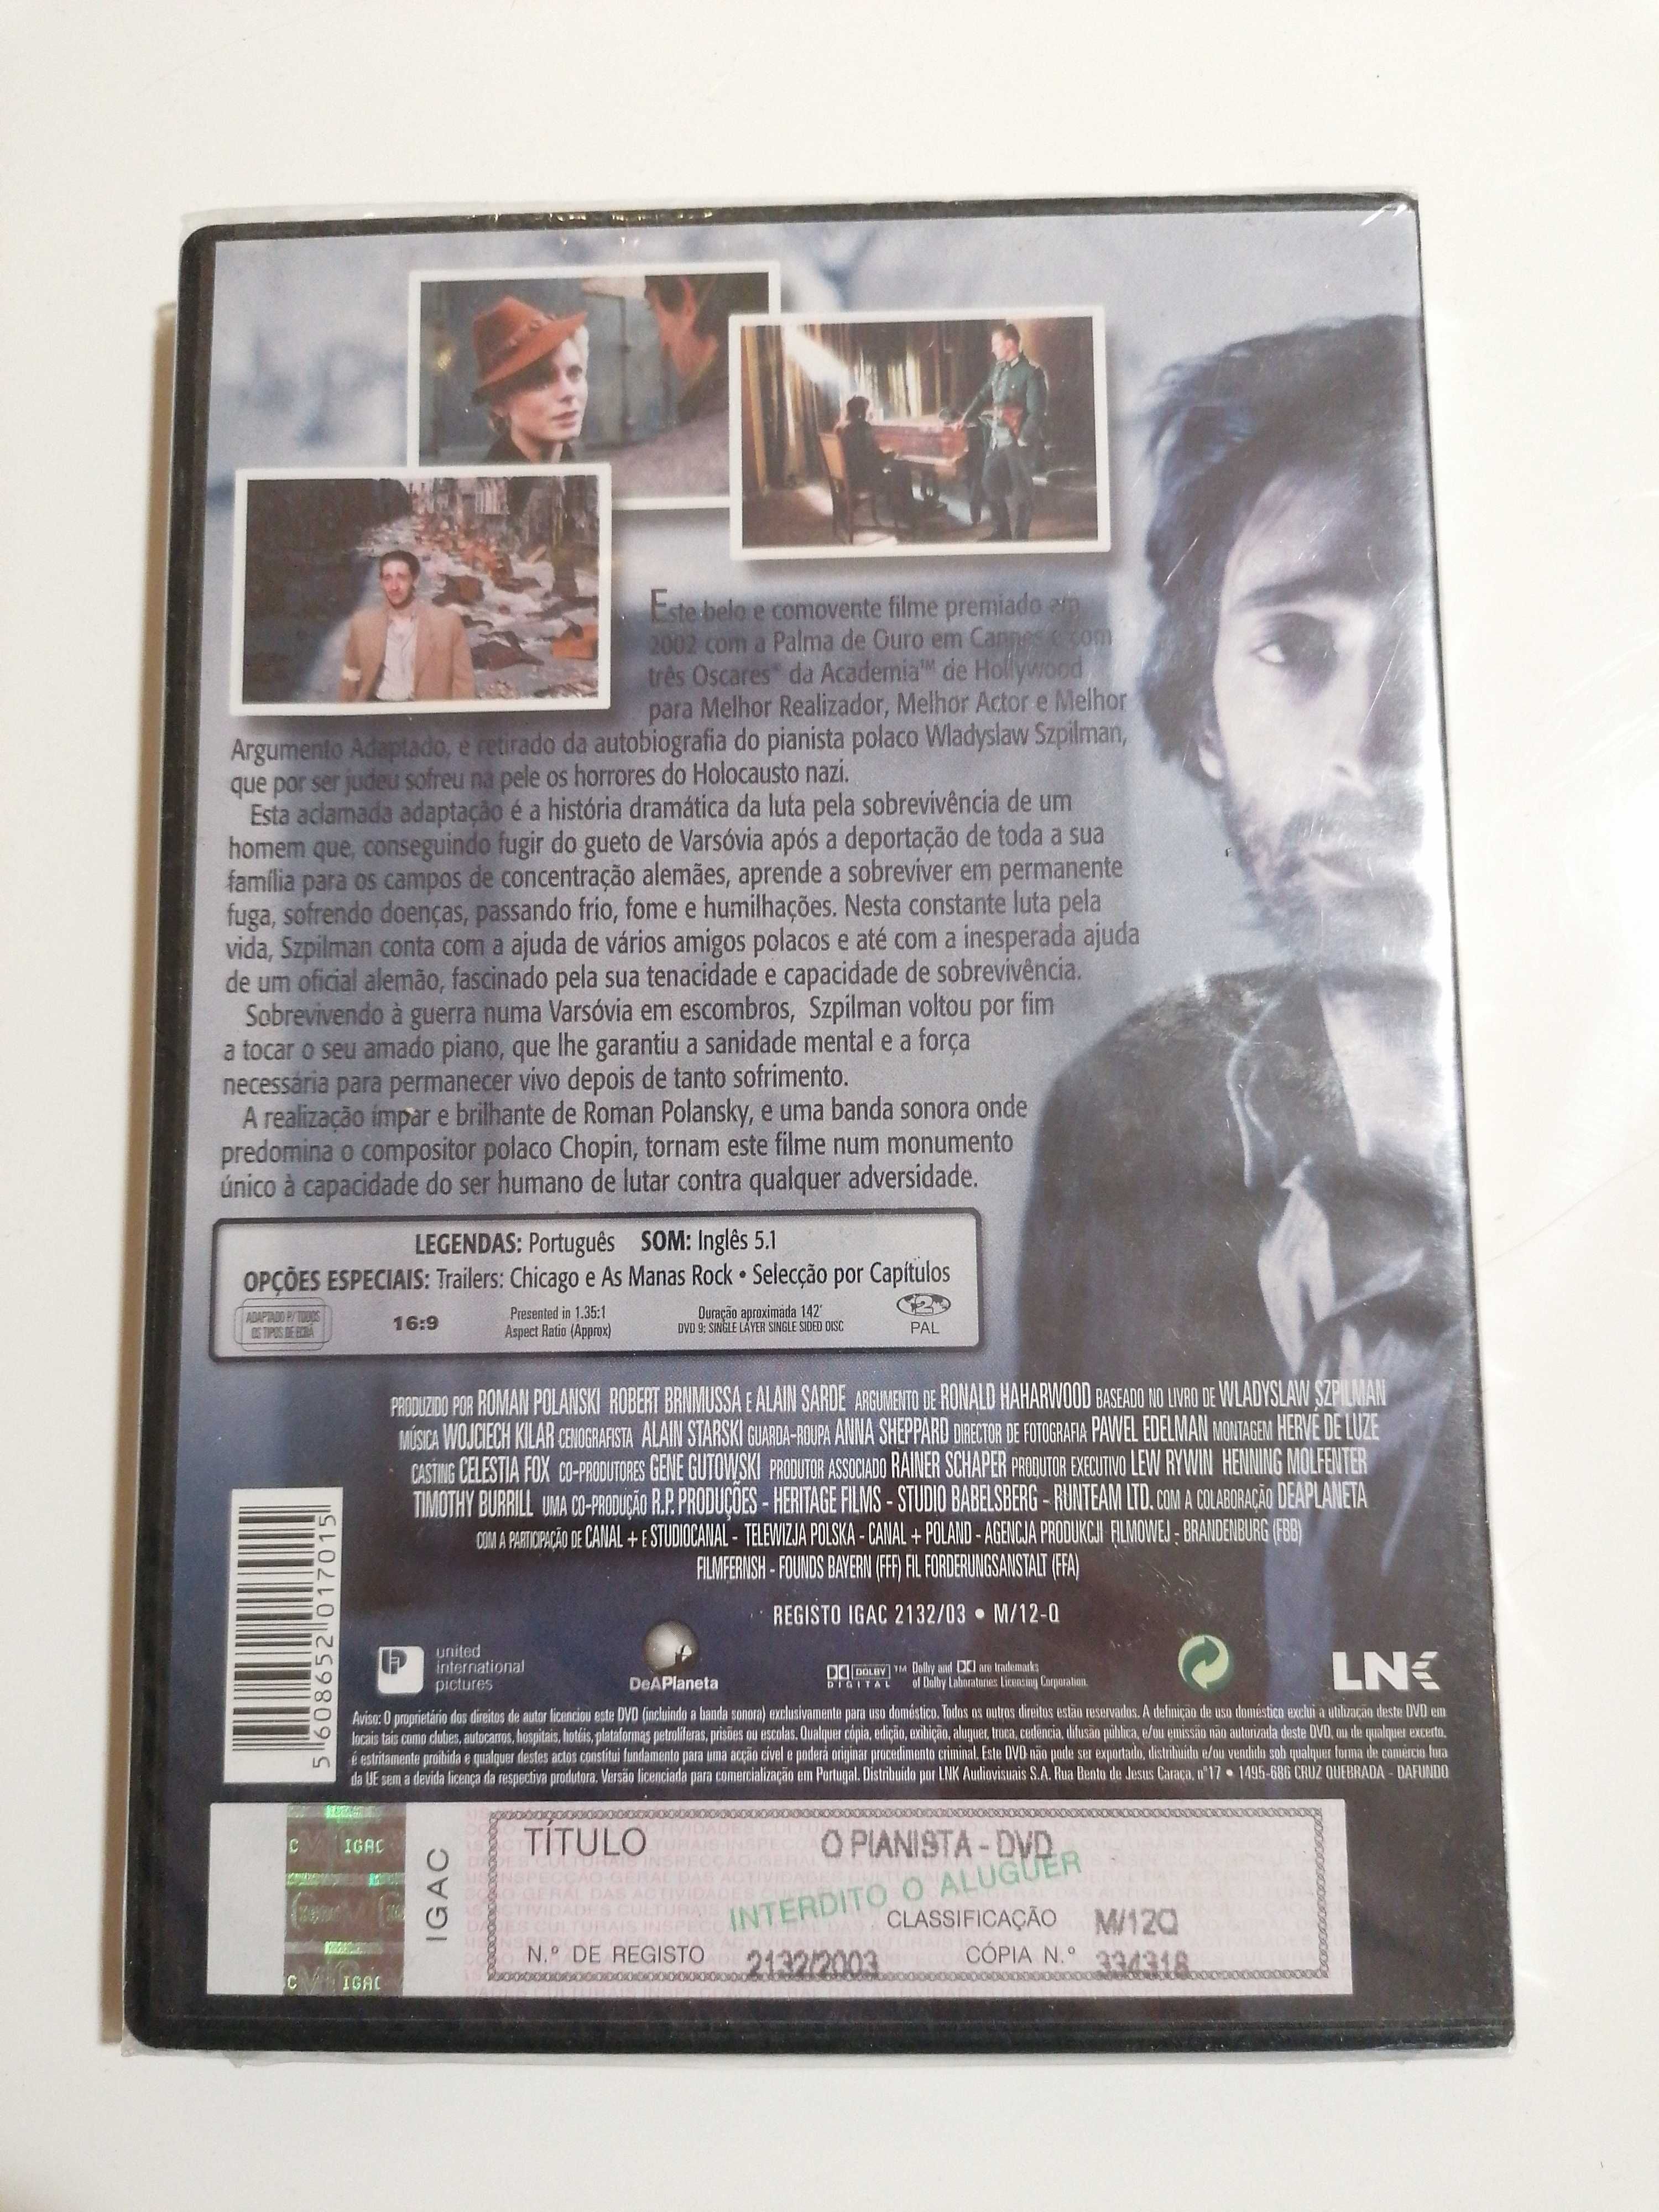 DVD "O Pianista" Selado